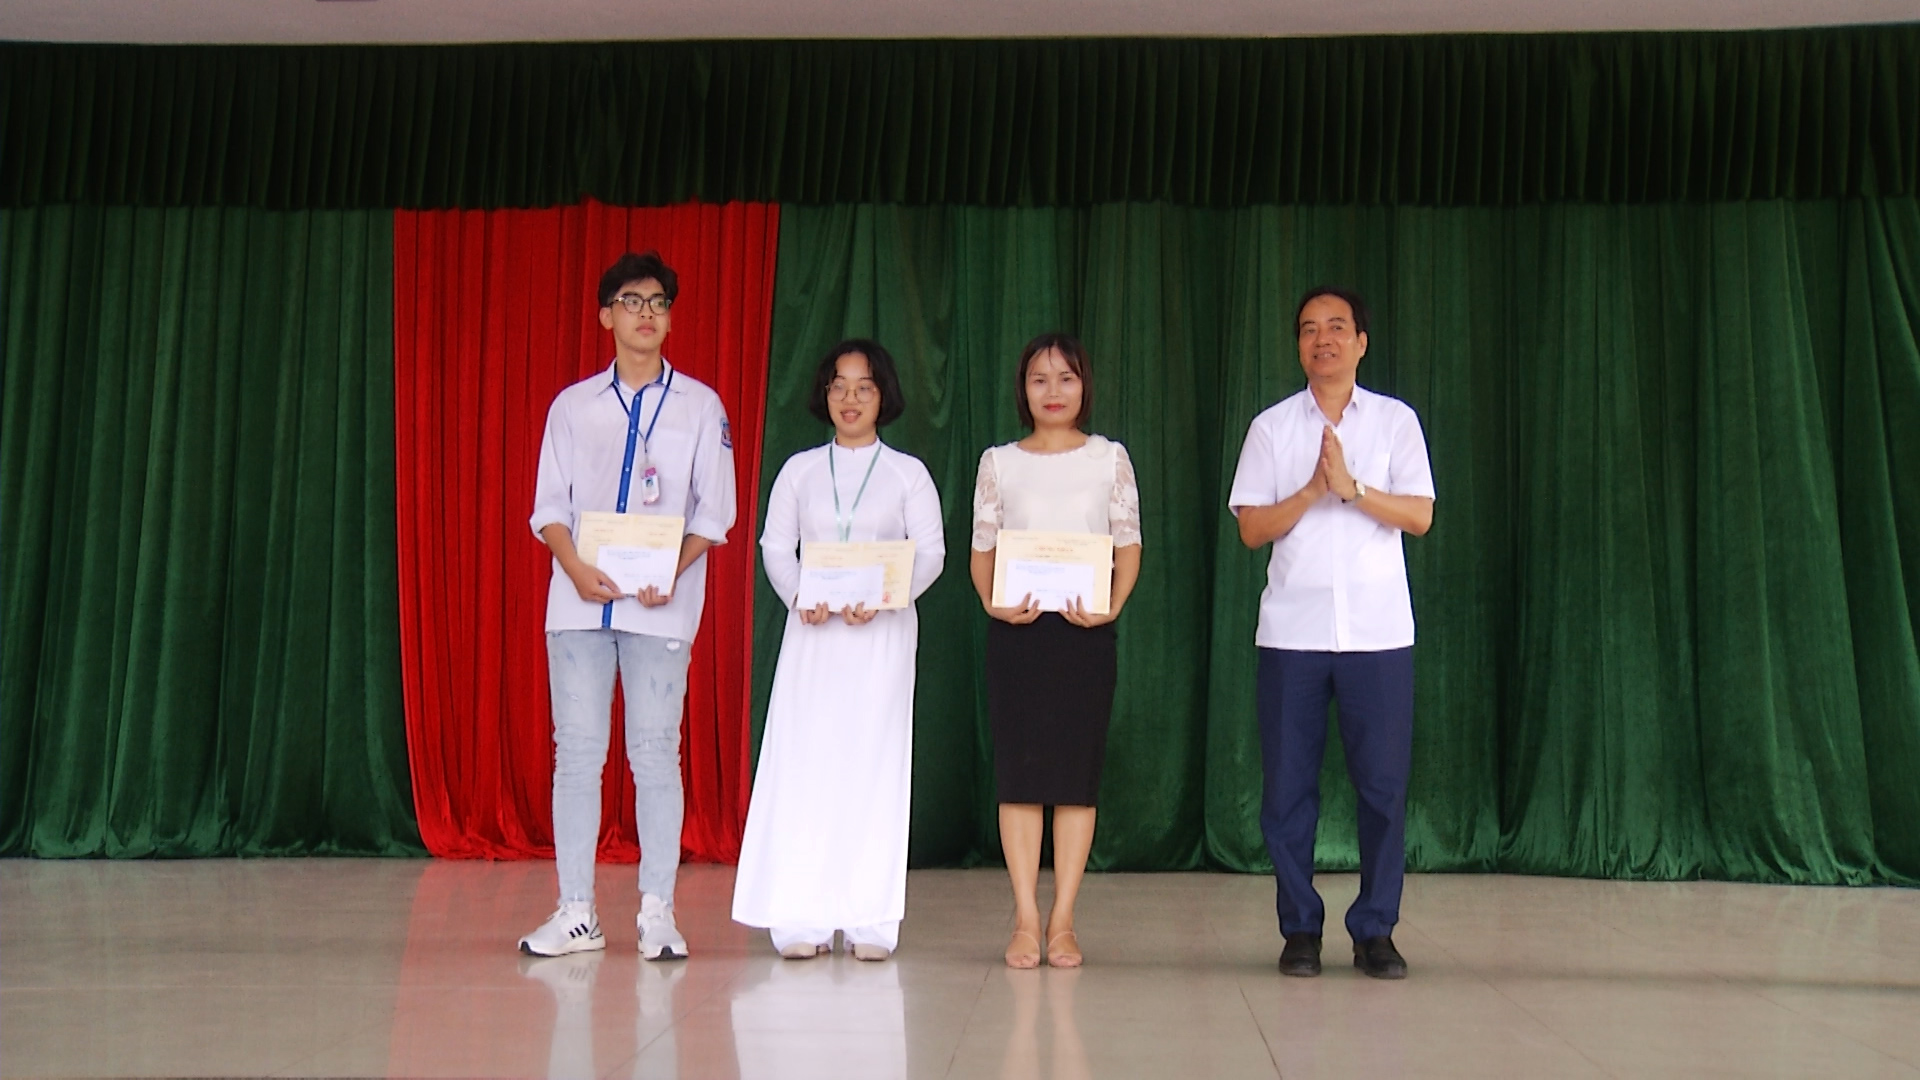 Học sinh Trường THPT Hòn Gai đạt giải nhì Cuộc thi KHKT cấp quốc gia